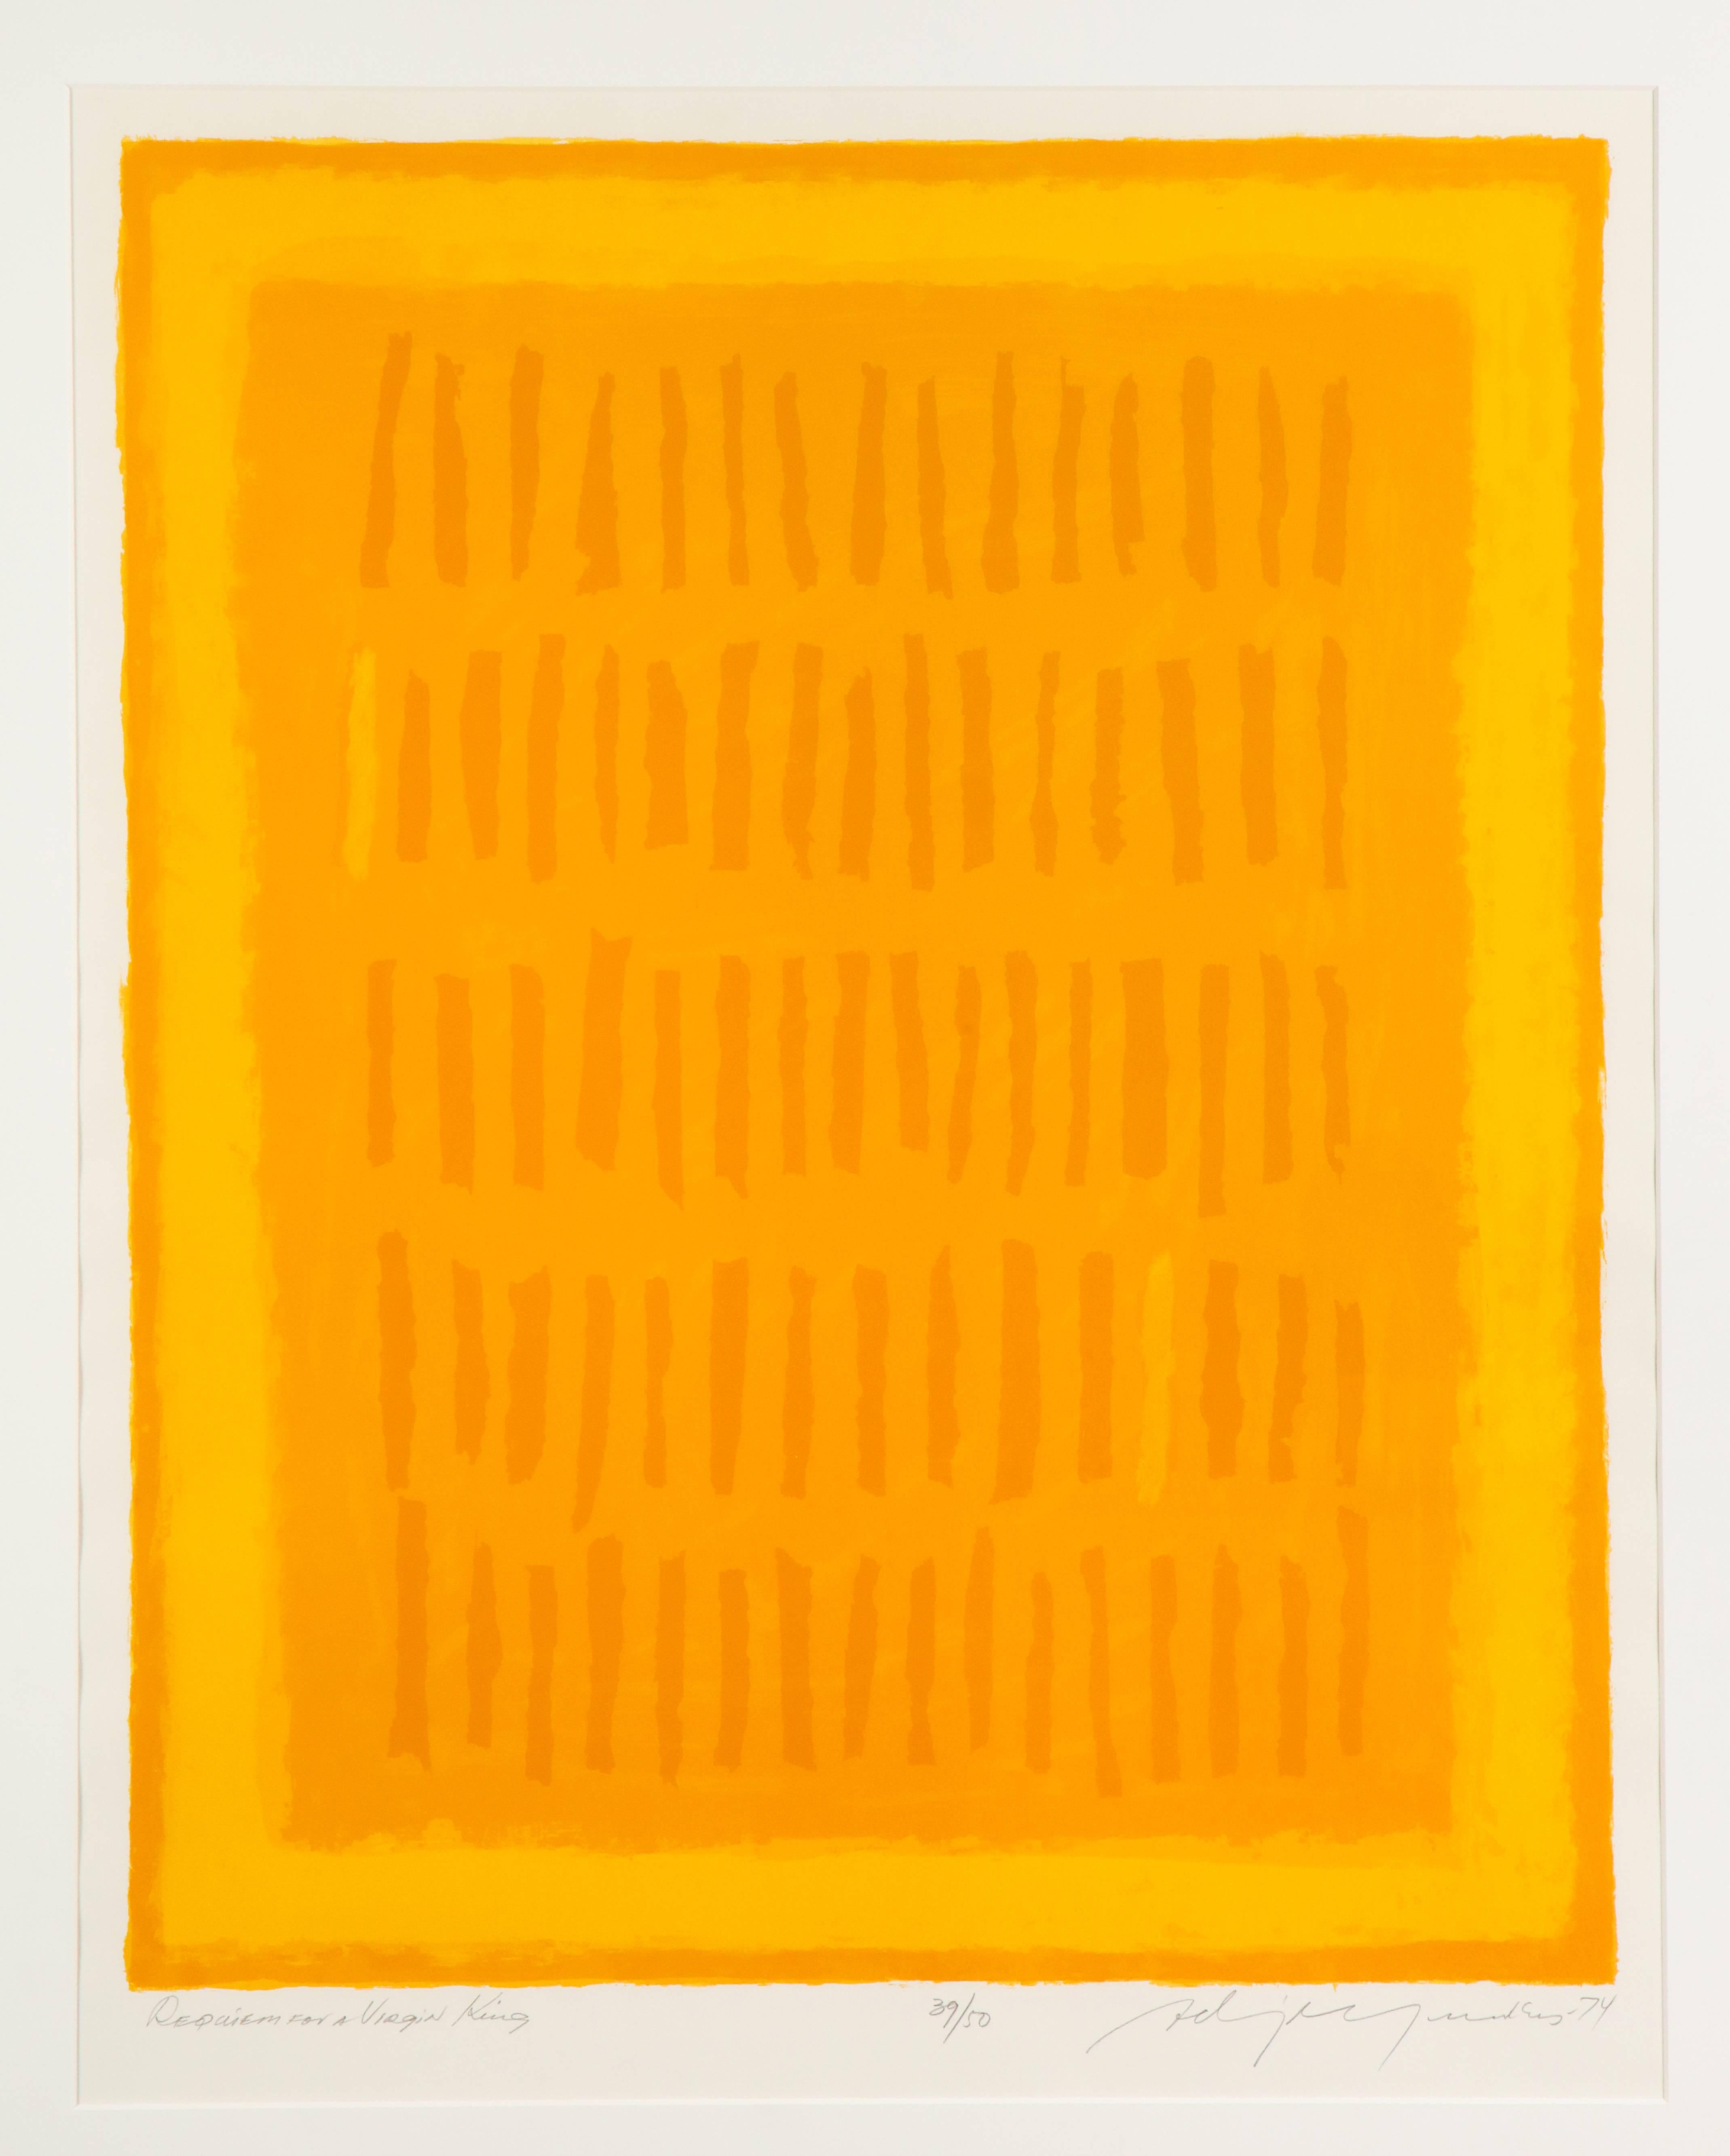 Requiem pour un roi vierge d'Adja Yunkers (1900-1983), lithographie abstraite, jaune, signée. Grande lithographie sur papier vélin. Signé et daté au crayon en bas à droite. Numéroté 39/50 et titré : Requiem pour un roi vierge. La taille de l'image